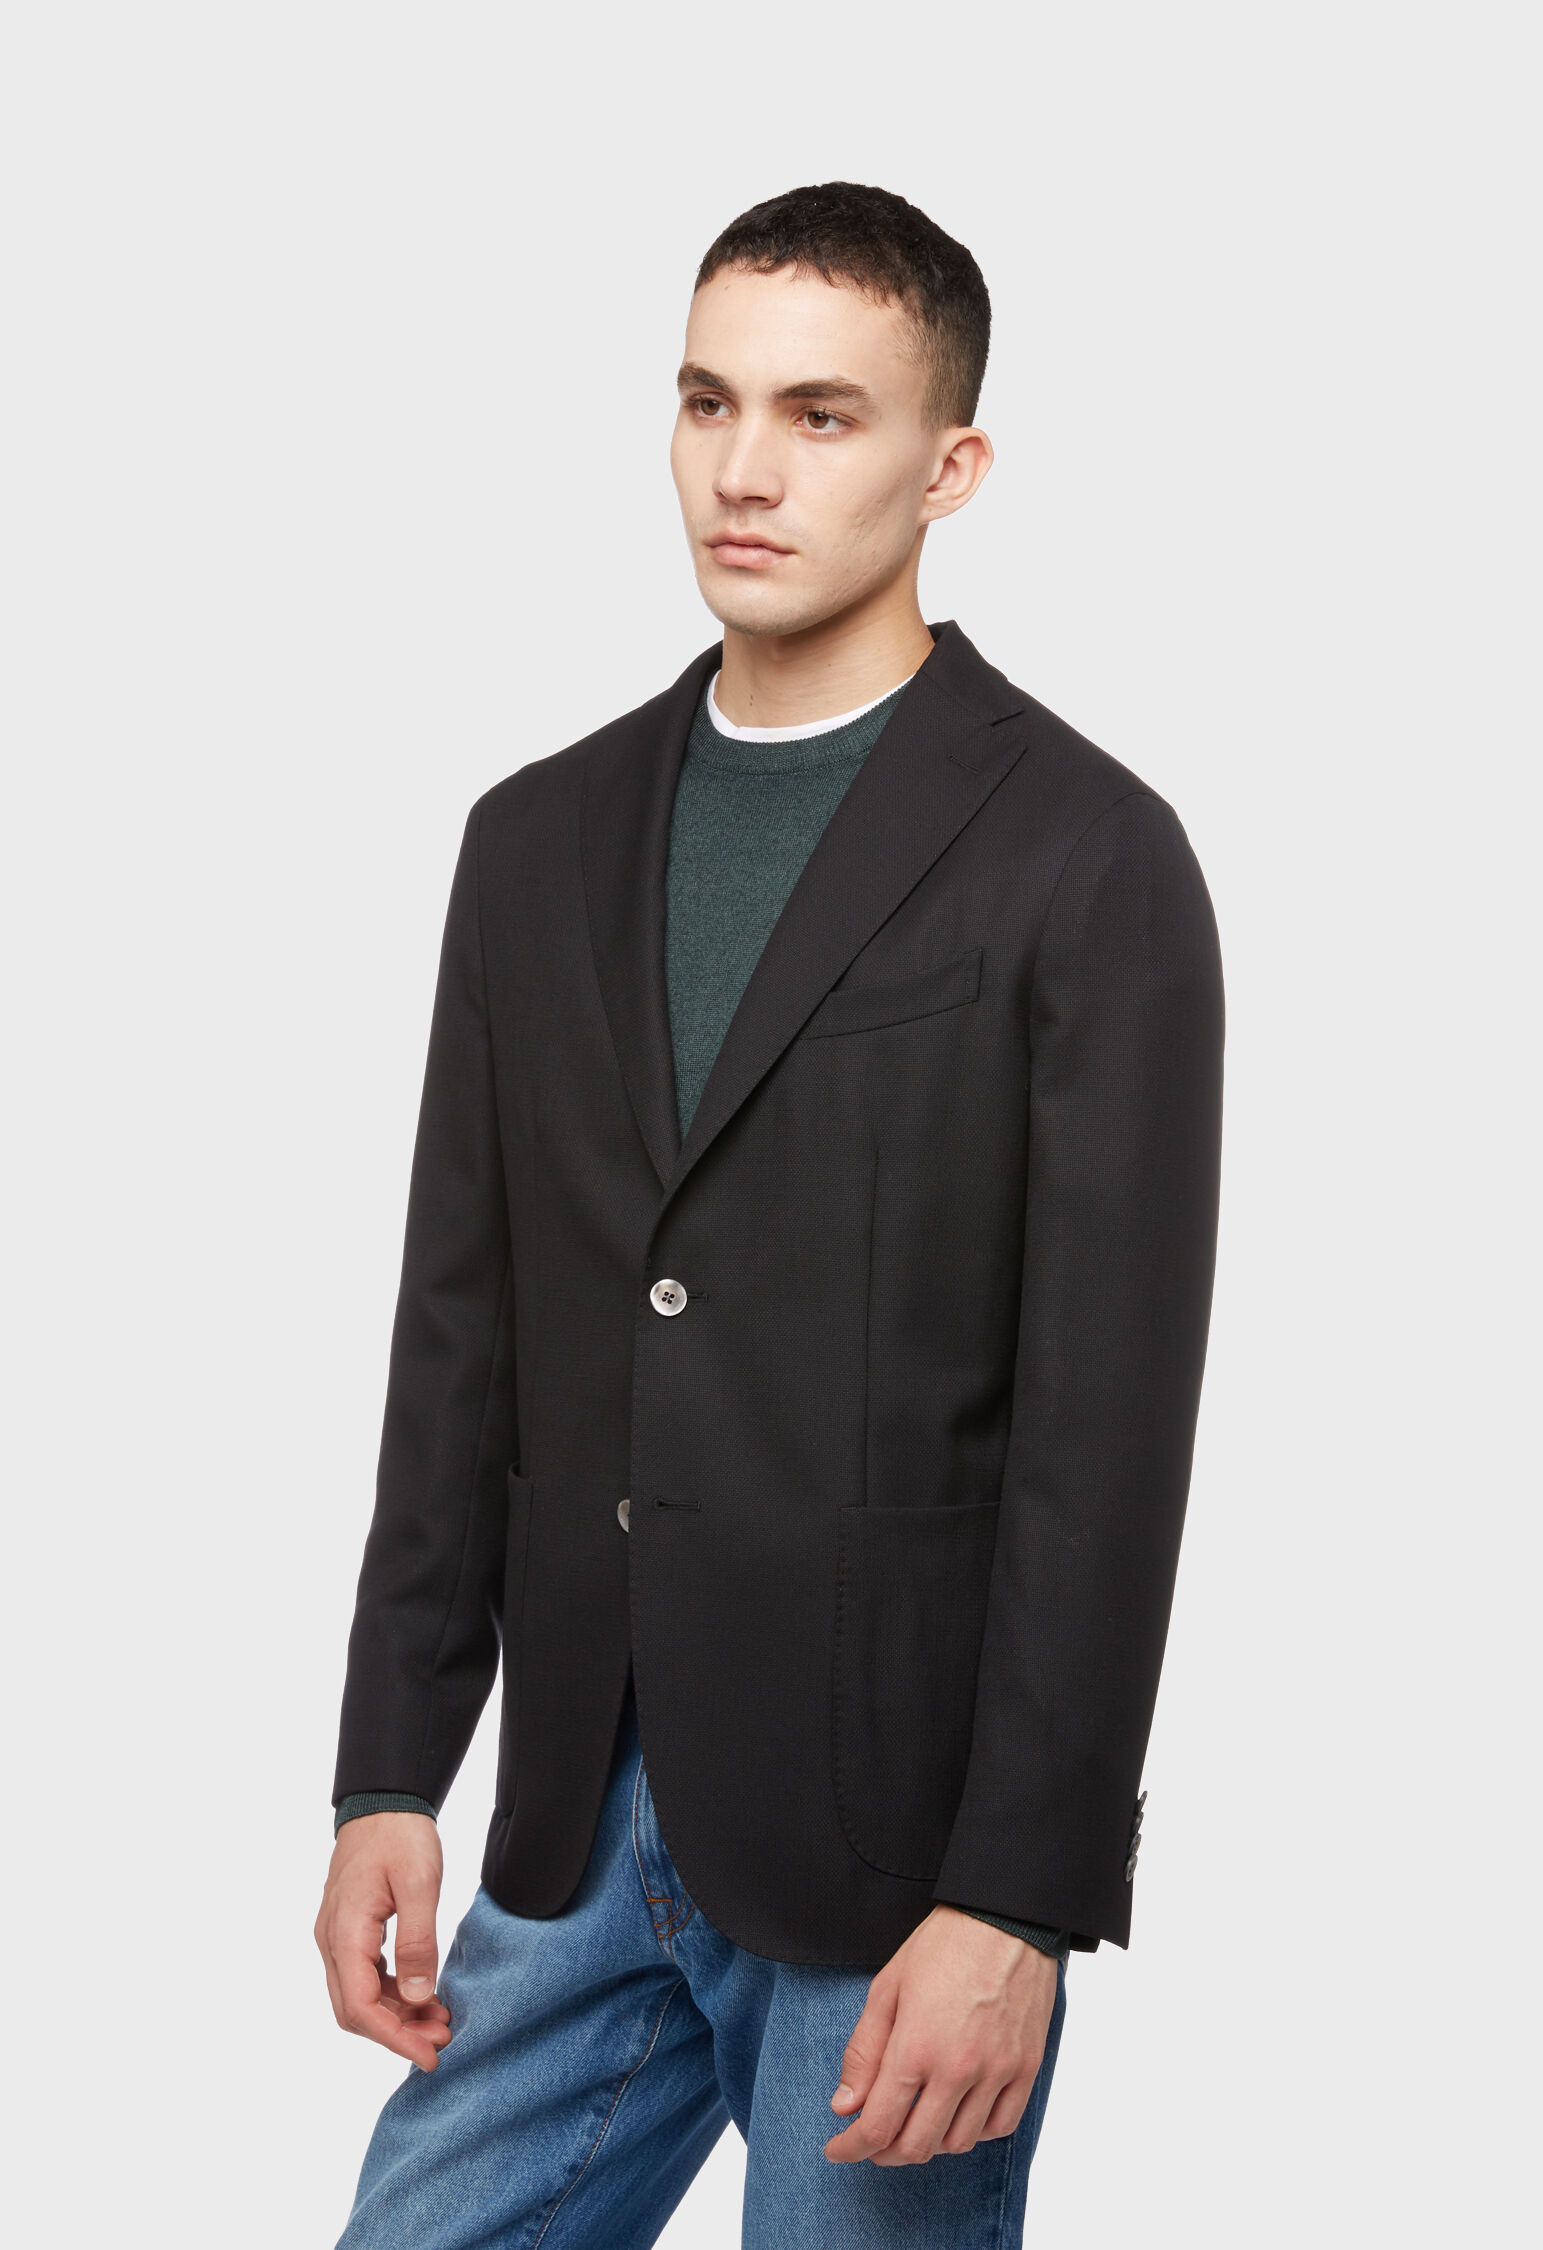 Black 100% wool K-Jacket in Black color: Luxury Italian Jackets